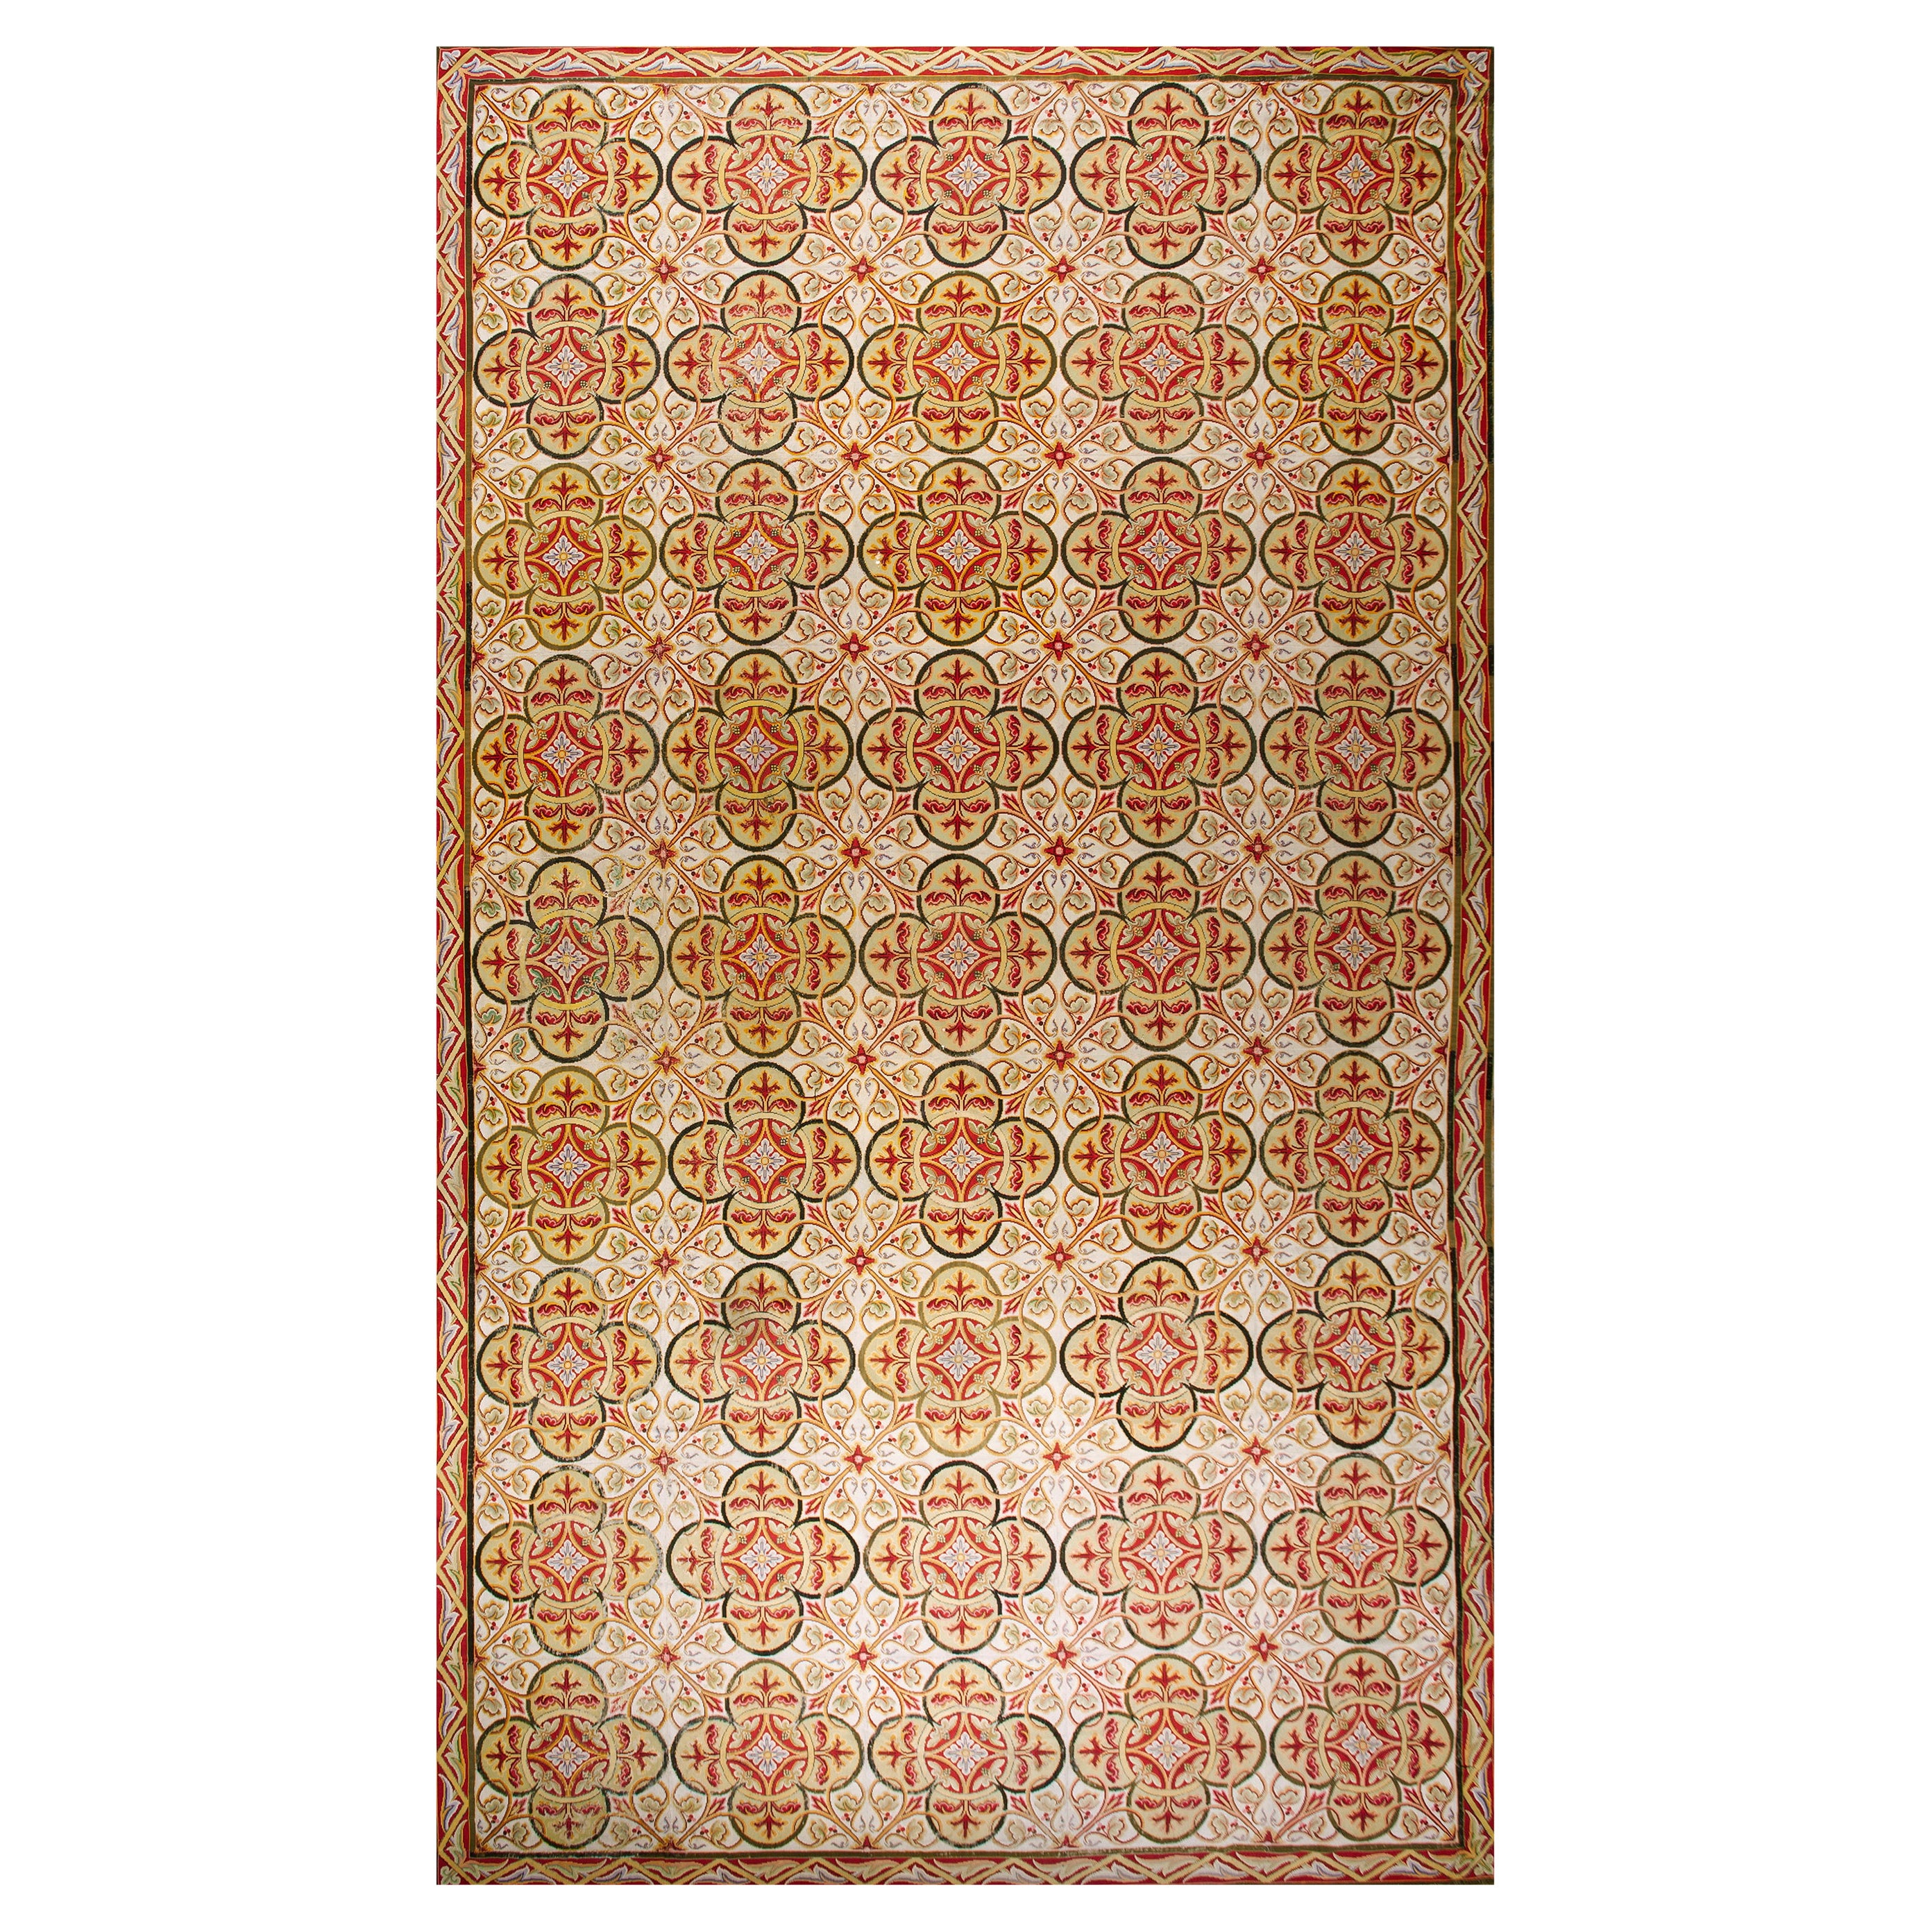 Englischer Nadelspitze-Teppich aus der Mitte des 19. Jahrhunderts ( 11' x 19'6" - 335 x 594 )